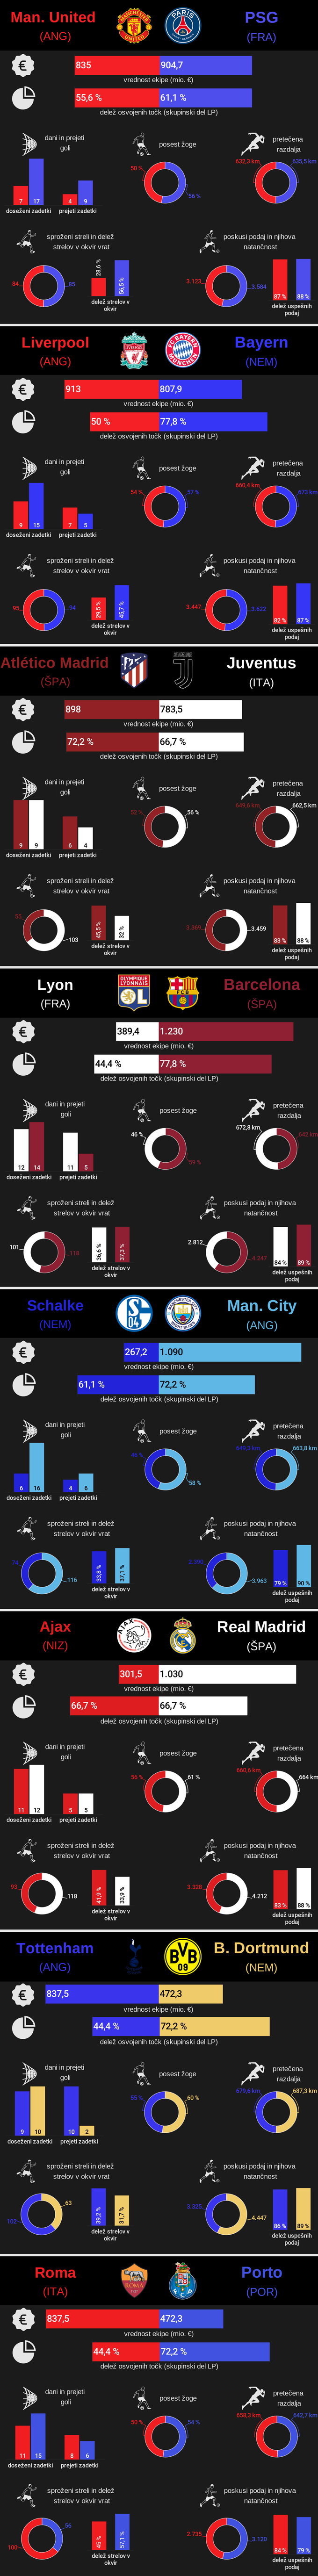 Liga prvakov 1/16 finala, 2018/19 | Foto: Infografika: Marjan Žlogar